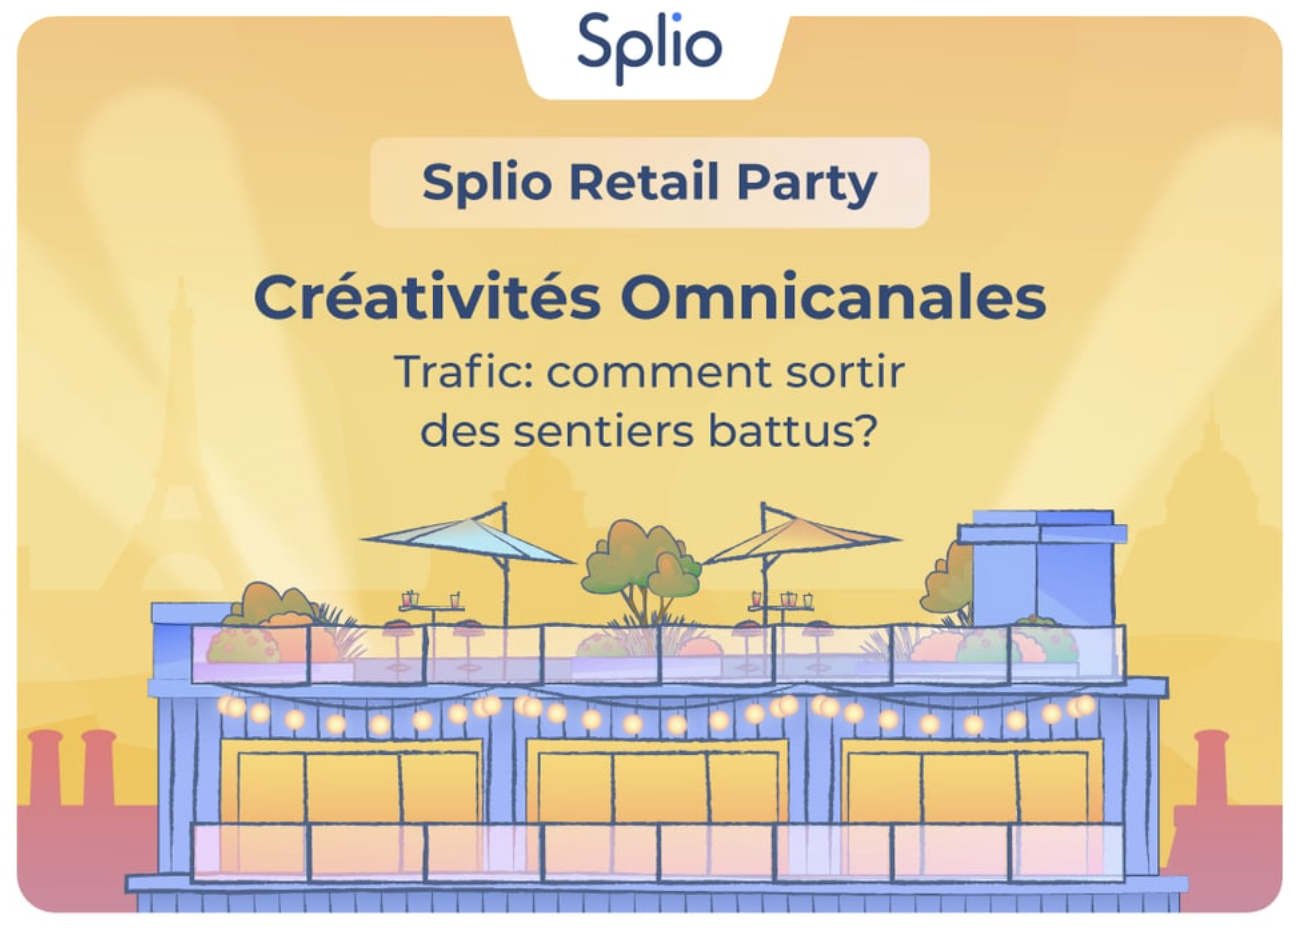 BSPK Splio Retail Party: Innovating in Omnichannel through Creativity